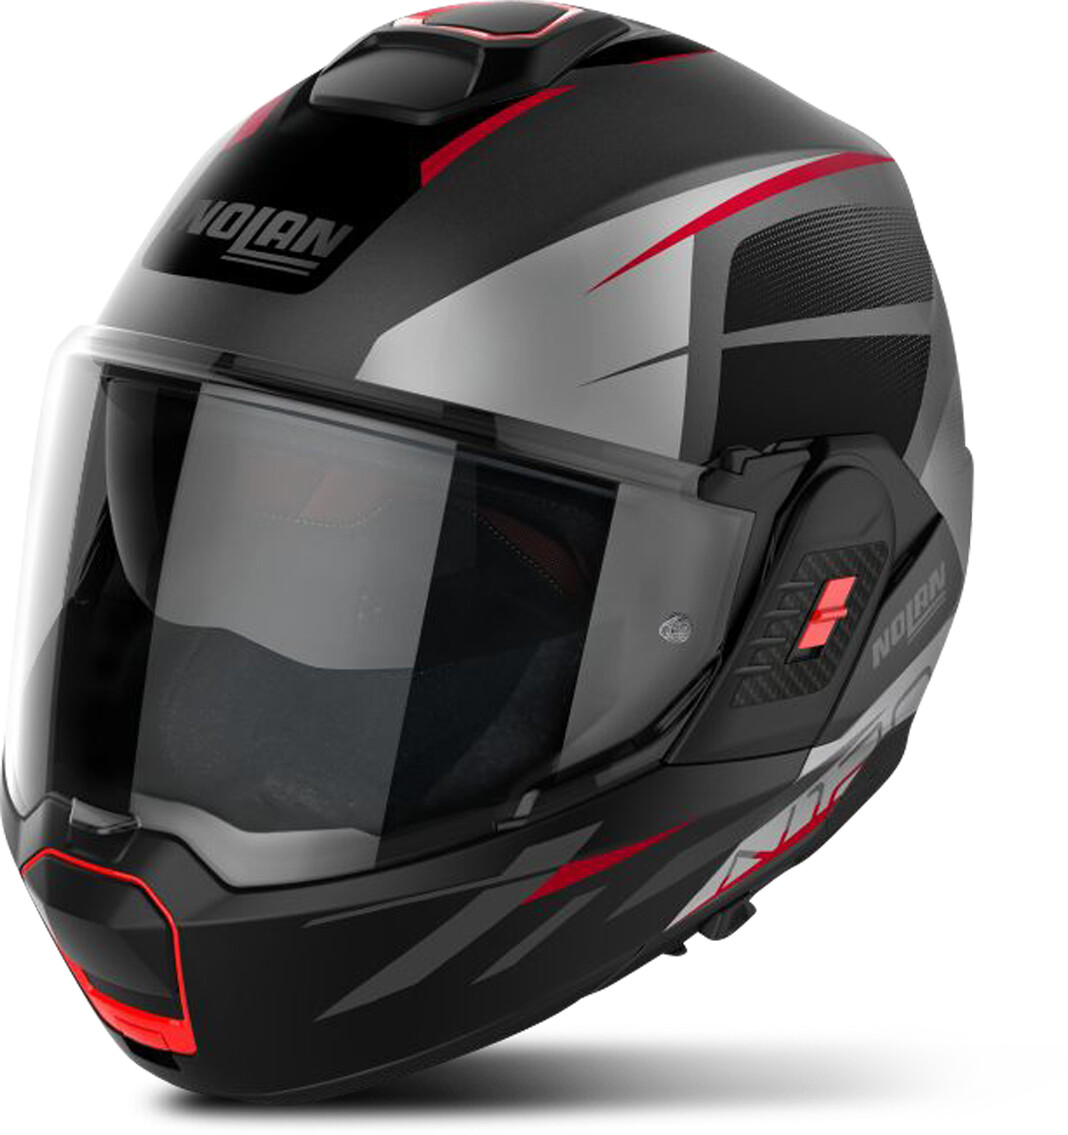 Photos - Motorcycle Helmet Nolan N120-1 Nightlife matt black/grey/red 